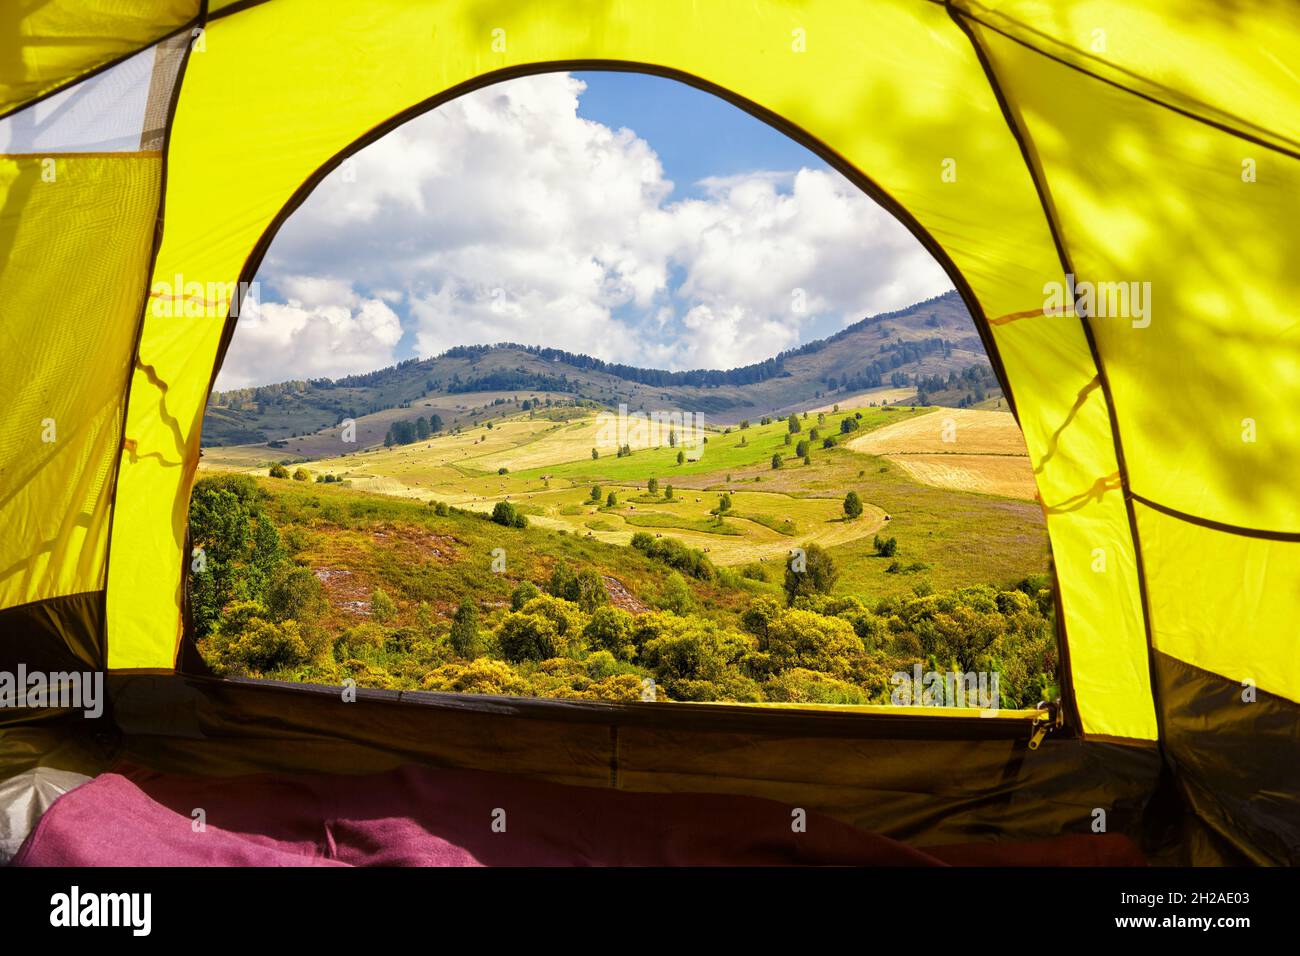 Sommer Altai Landschaft mit Hügeln und Wiesen. Blick vom Eingang des Campingzelts. Camping und Reisen in der Natur Konzept. Stockfoto